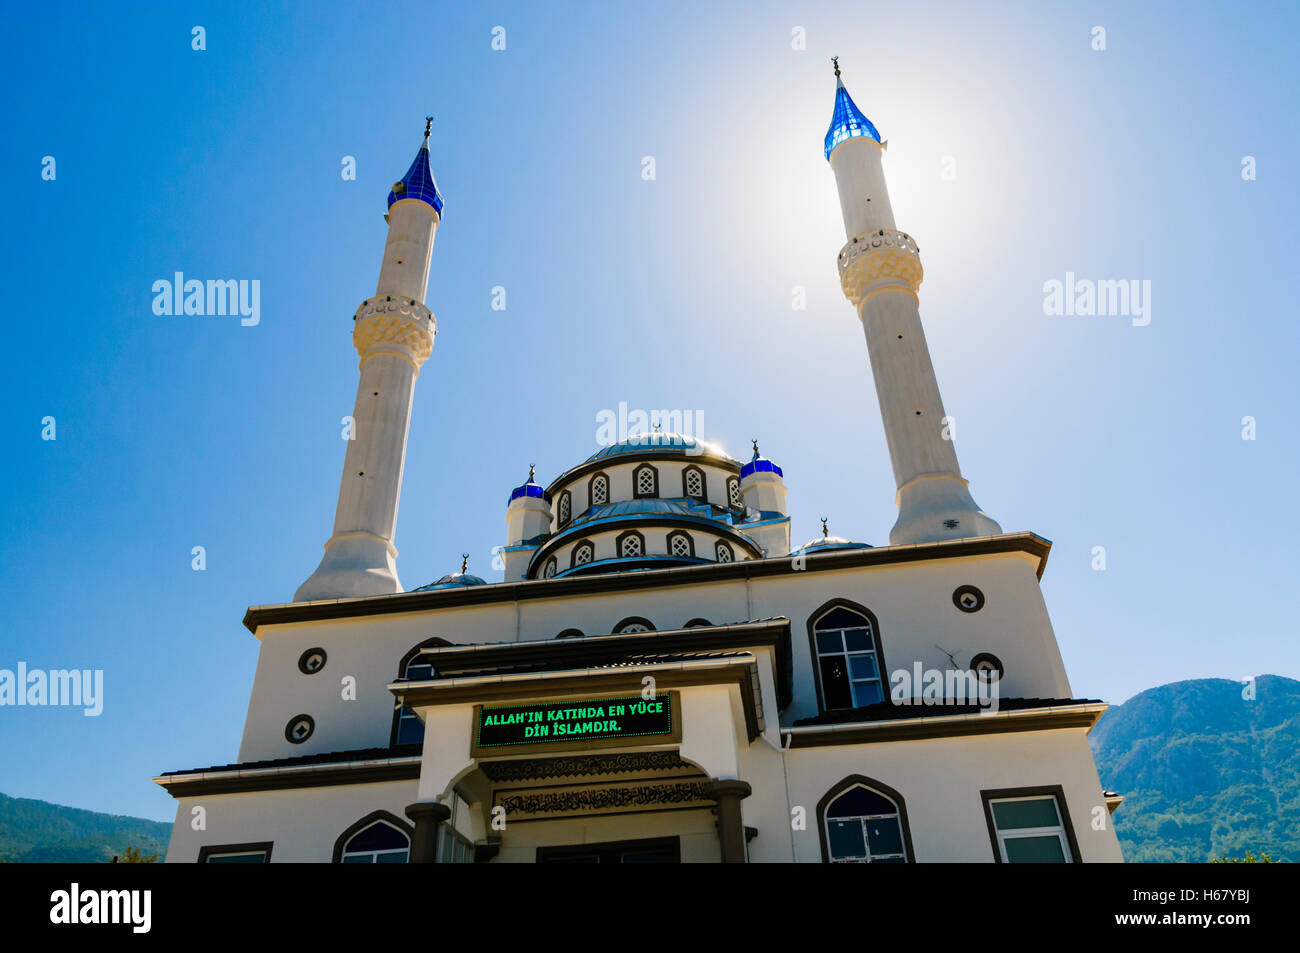 Sonne hinter dem Minarett einer Moschee mit einer Botschaft auf Türkisch: „Die höchste Religion in Allah ist der Islam“. Stockfoto